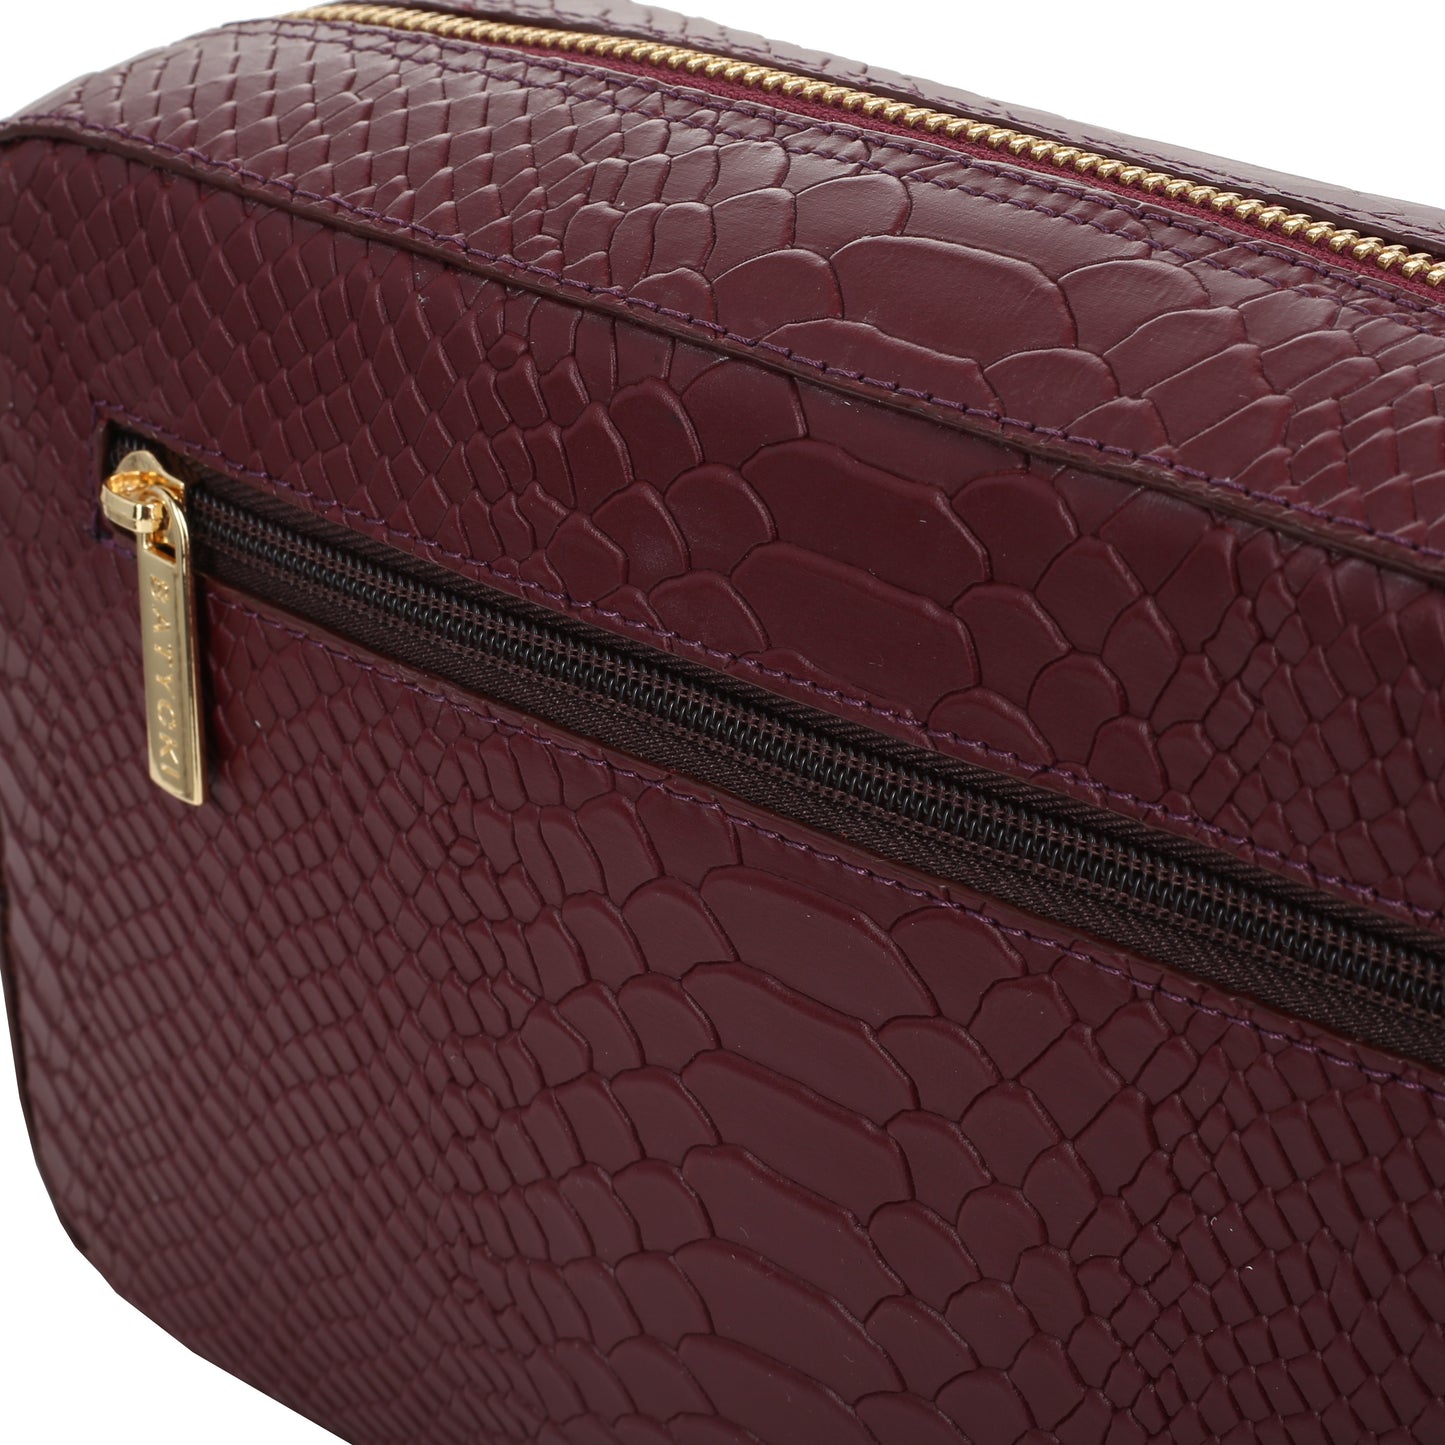 Alfie claret women's leather handbag